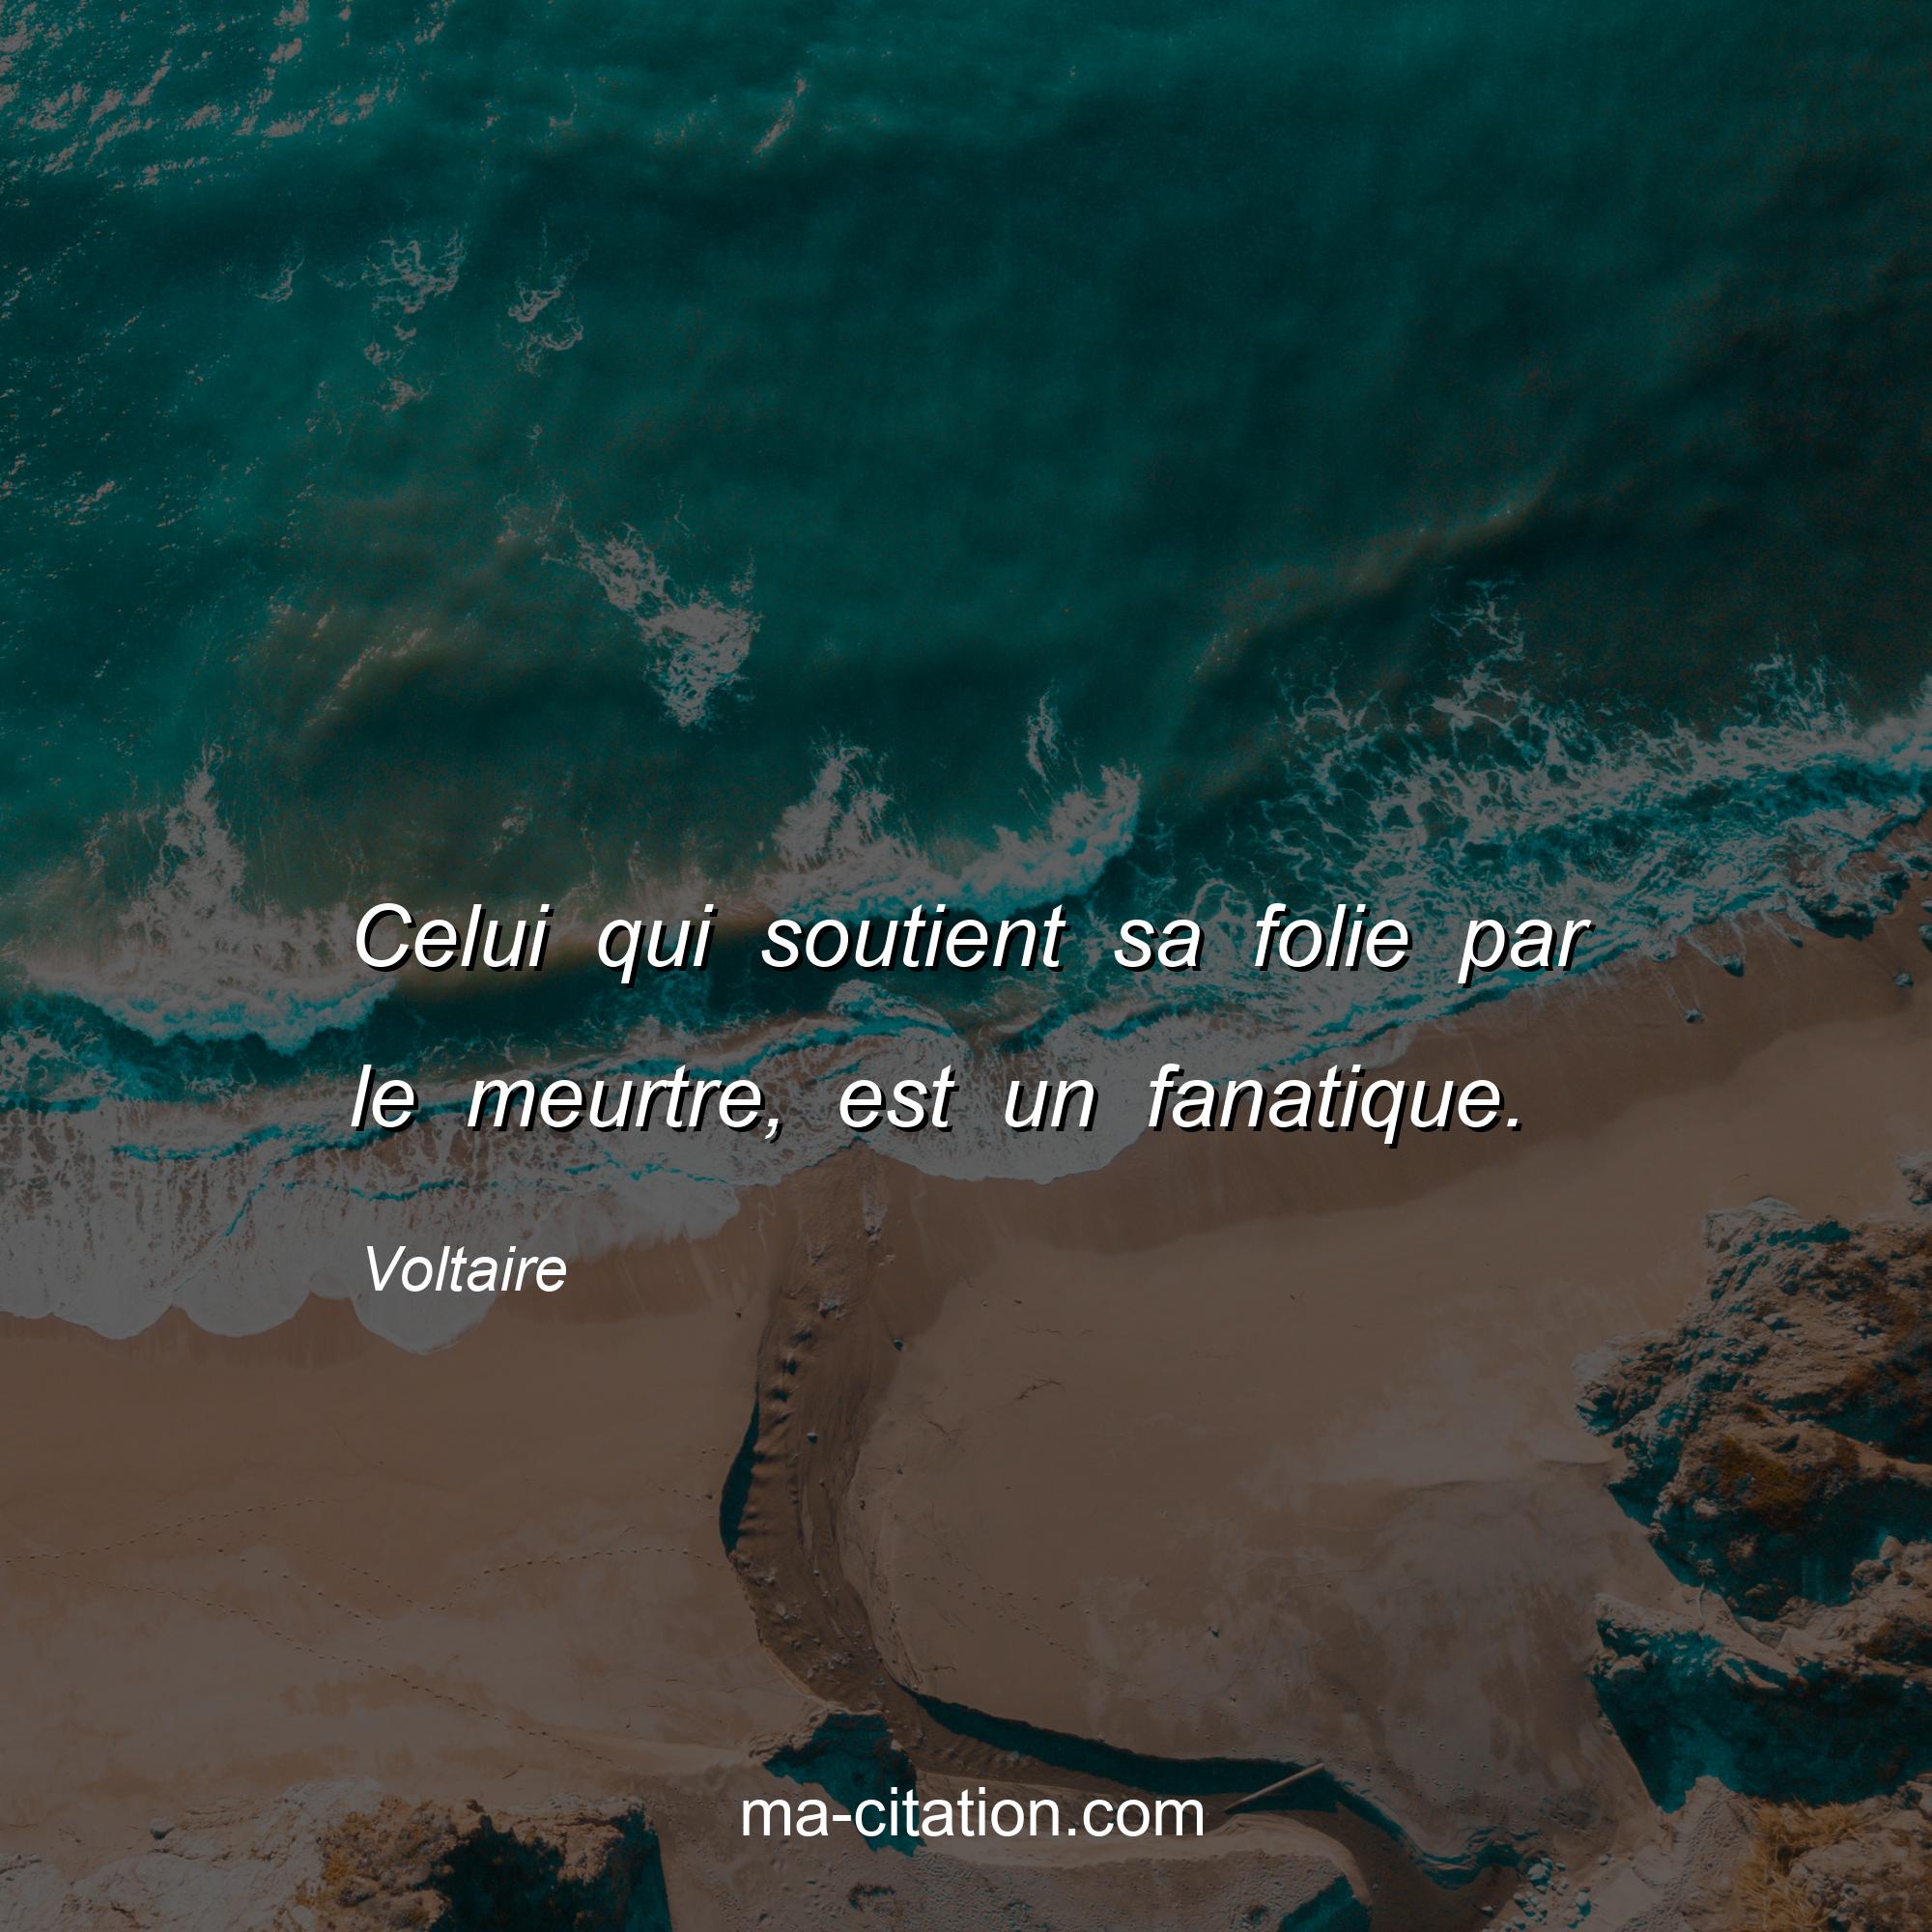 Voltaire : Celui qui soutient sa folie par le meurtre, est un fanatique.